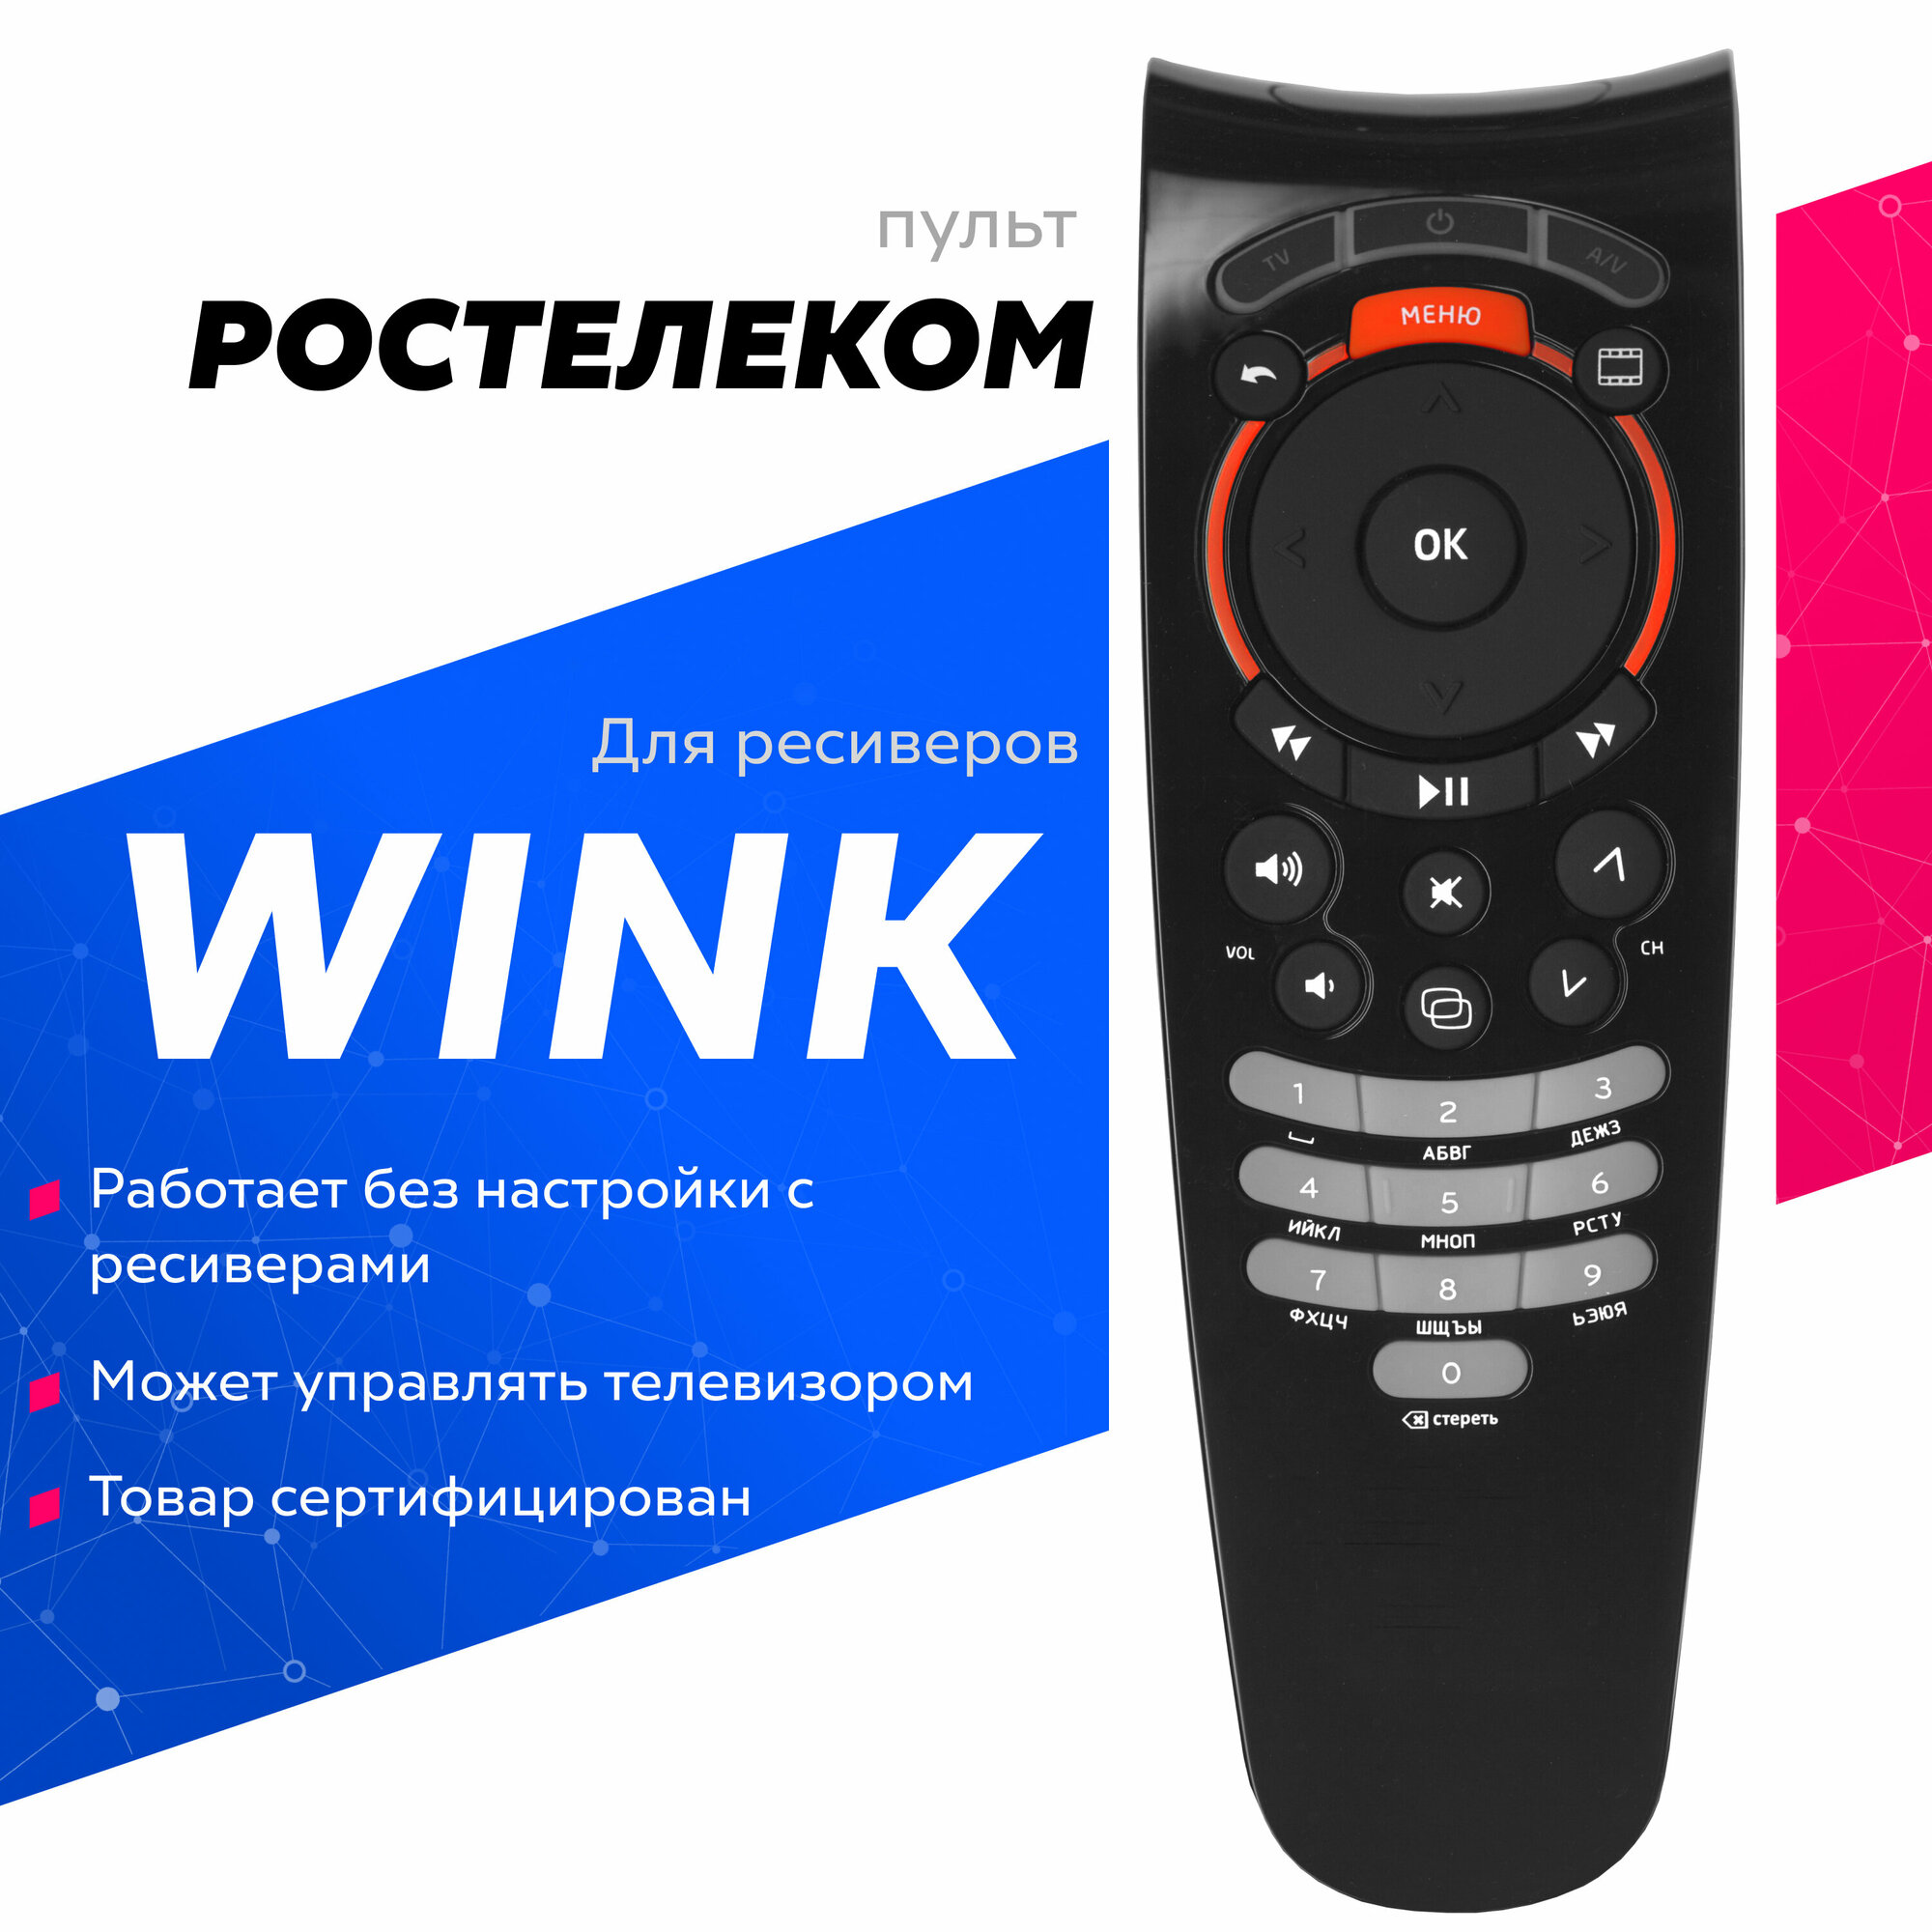 Пульт дистанционного управления оригинальный "WINK" / Ростелеком STB122A